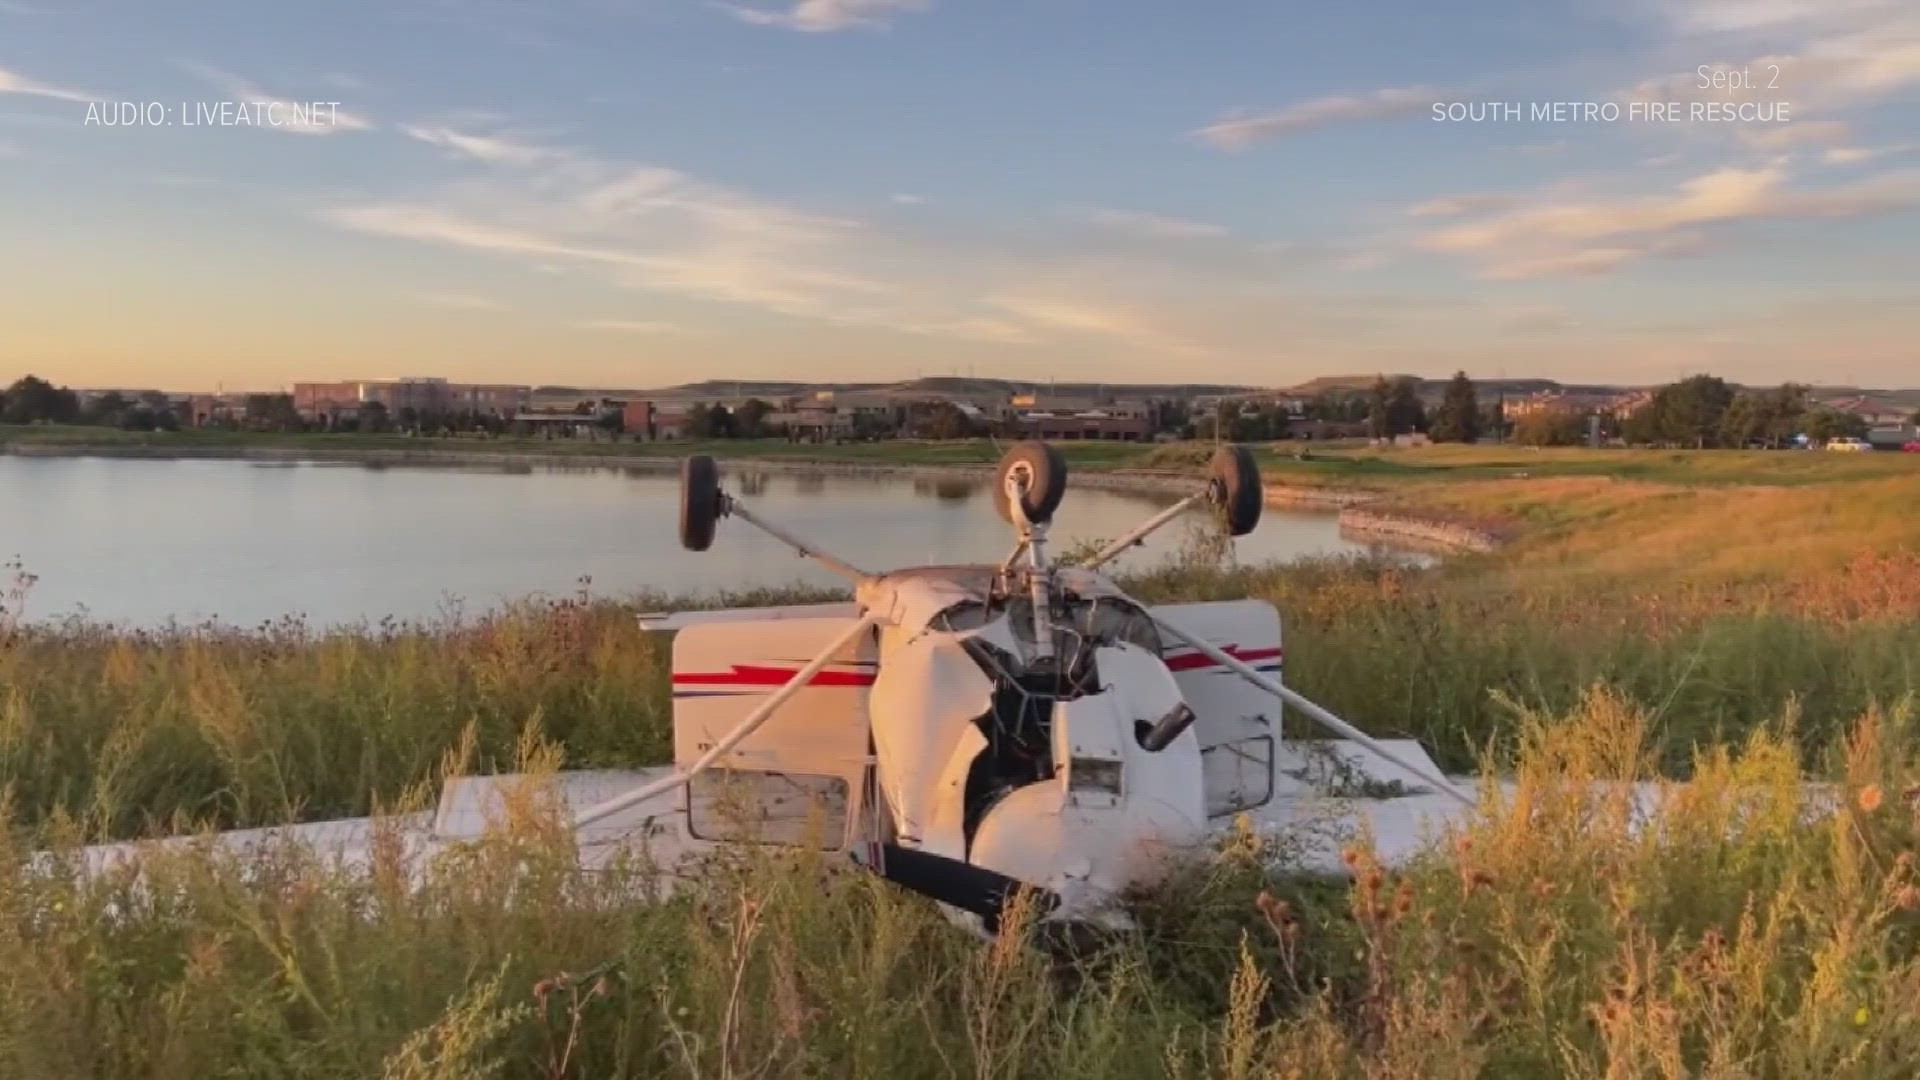 A Cessna-172 flipped over after crash landing following a bird strike last weekend near the Centennial Airport.